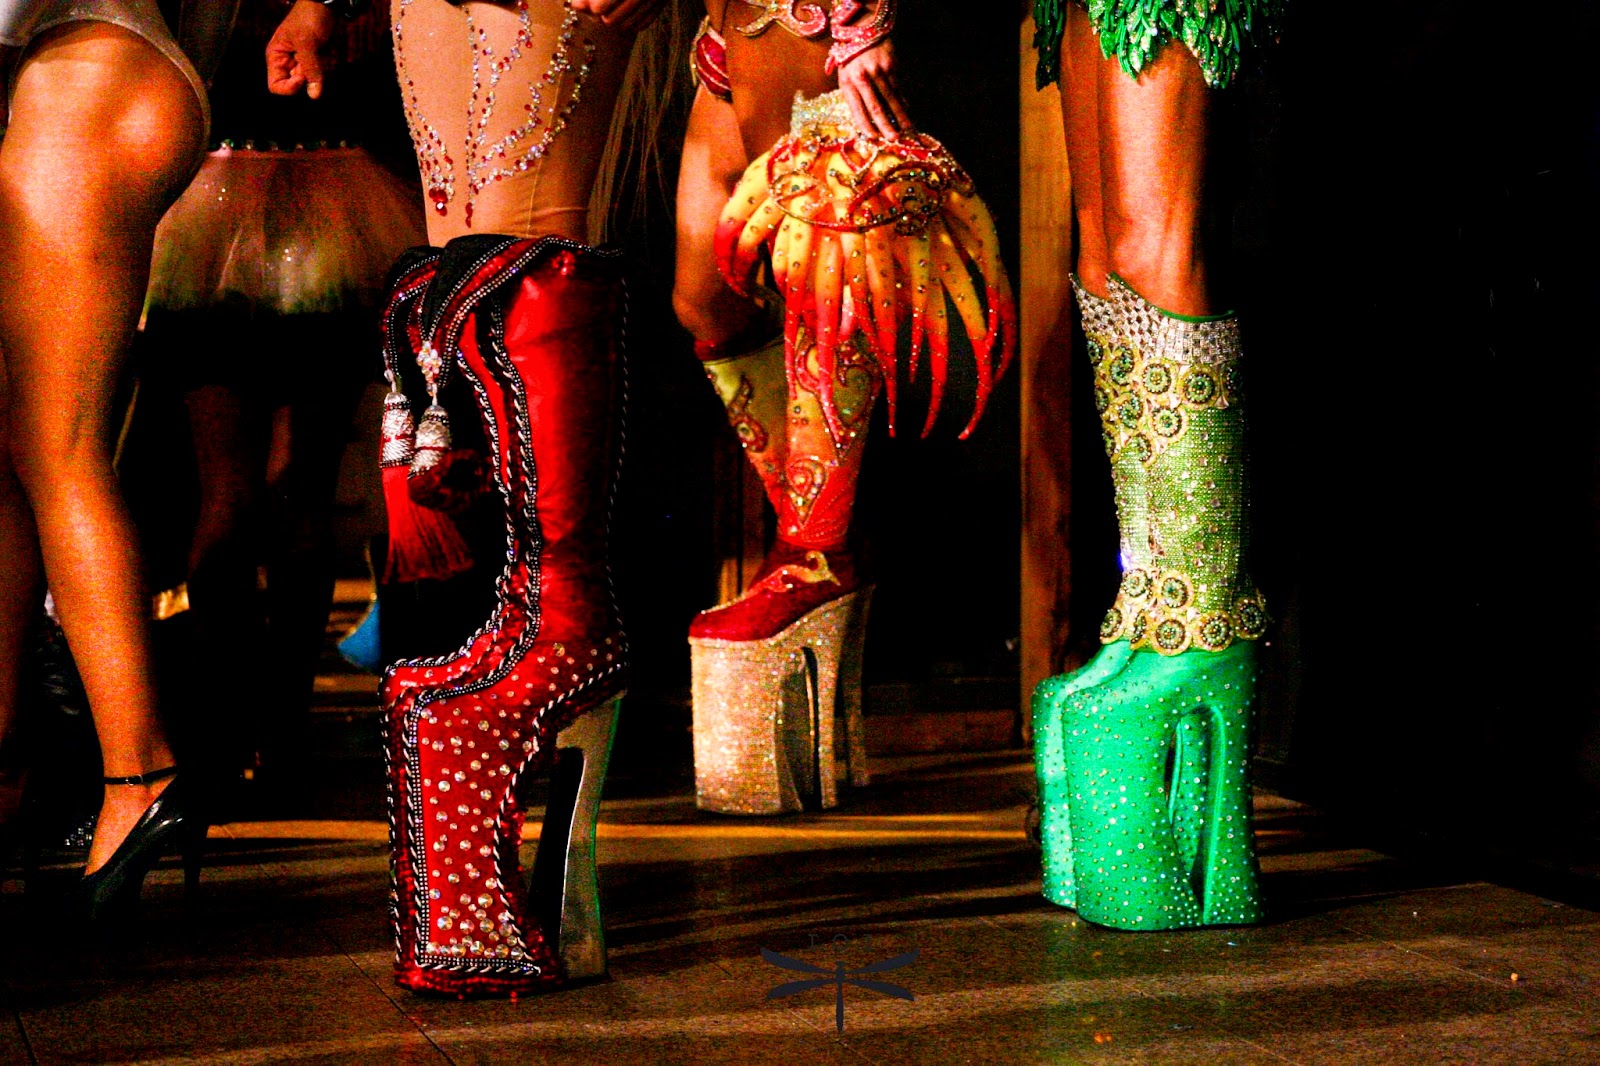 Gala-Drag-Queen-Las-Palmas-de-Gran-Canaria-2014-Leticia-Oliva-Lekue-ElblogdePatricia-plataformas-calzado-zapatos